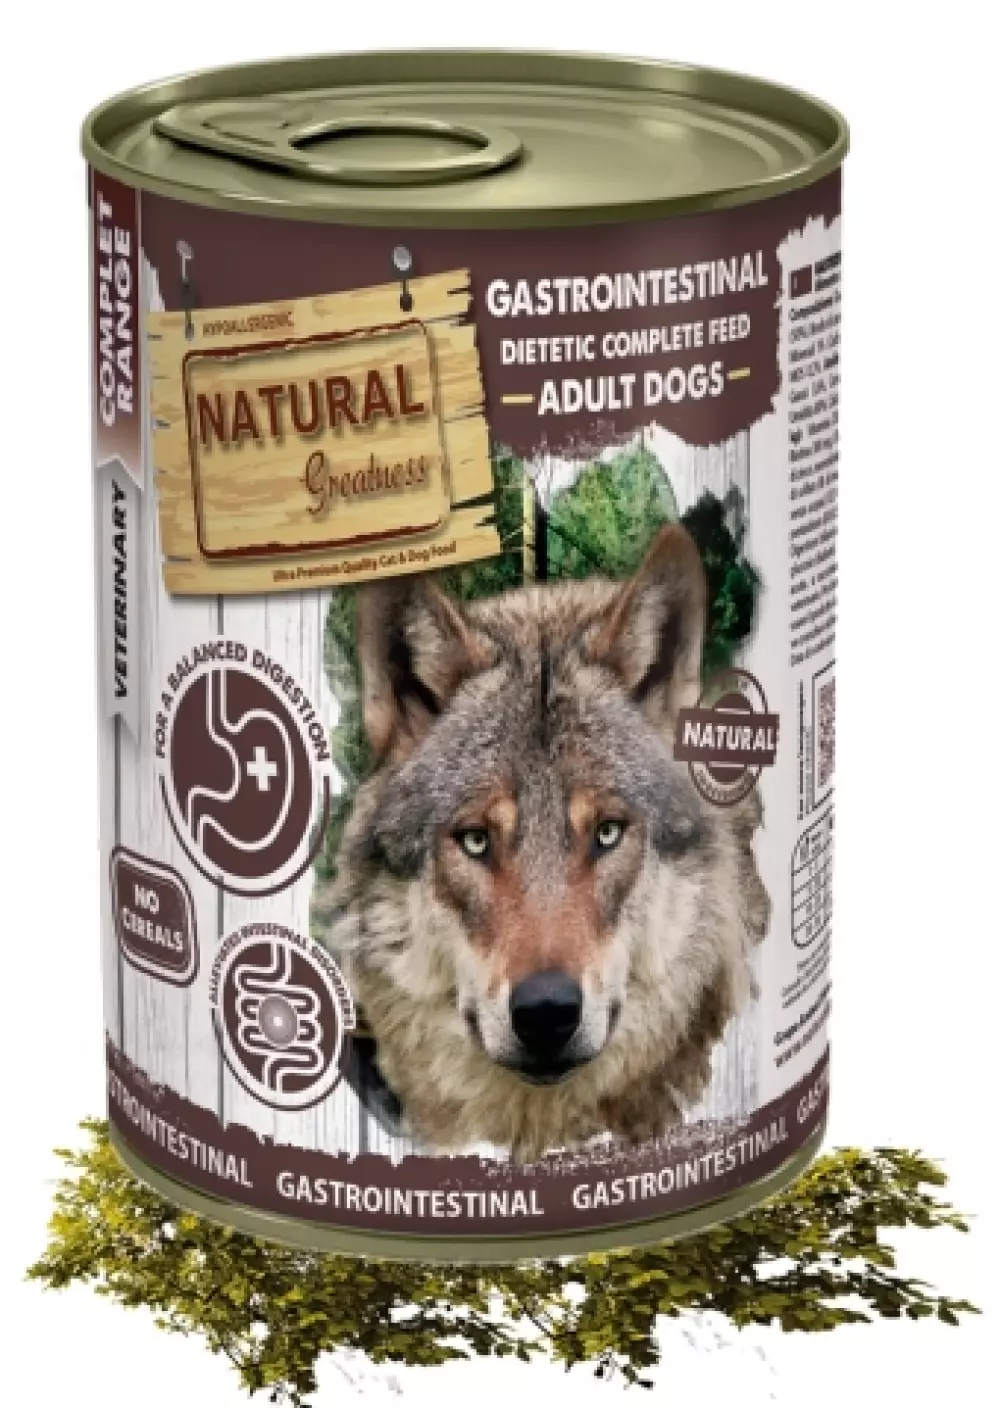 Natural Greatness Gastrointestinal diet Vet 400g, 8425402399798, Hundemat, Natural Greatness, Arctic Pets AS, Gastrointestinal diet Vet 400g